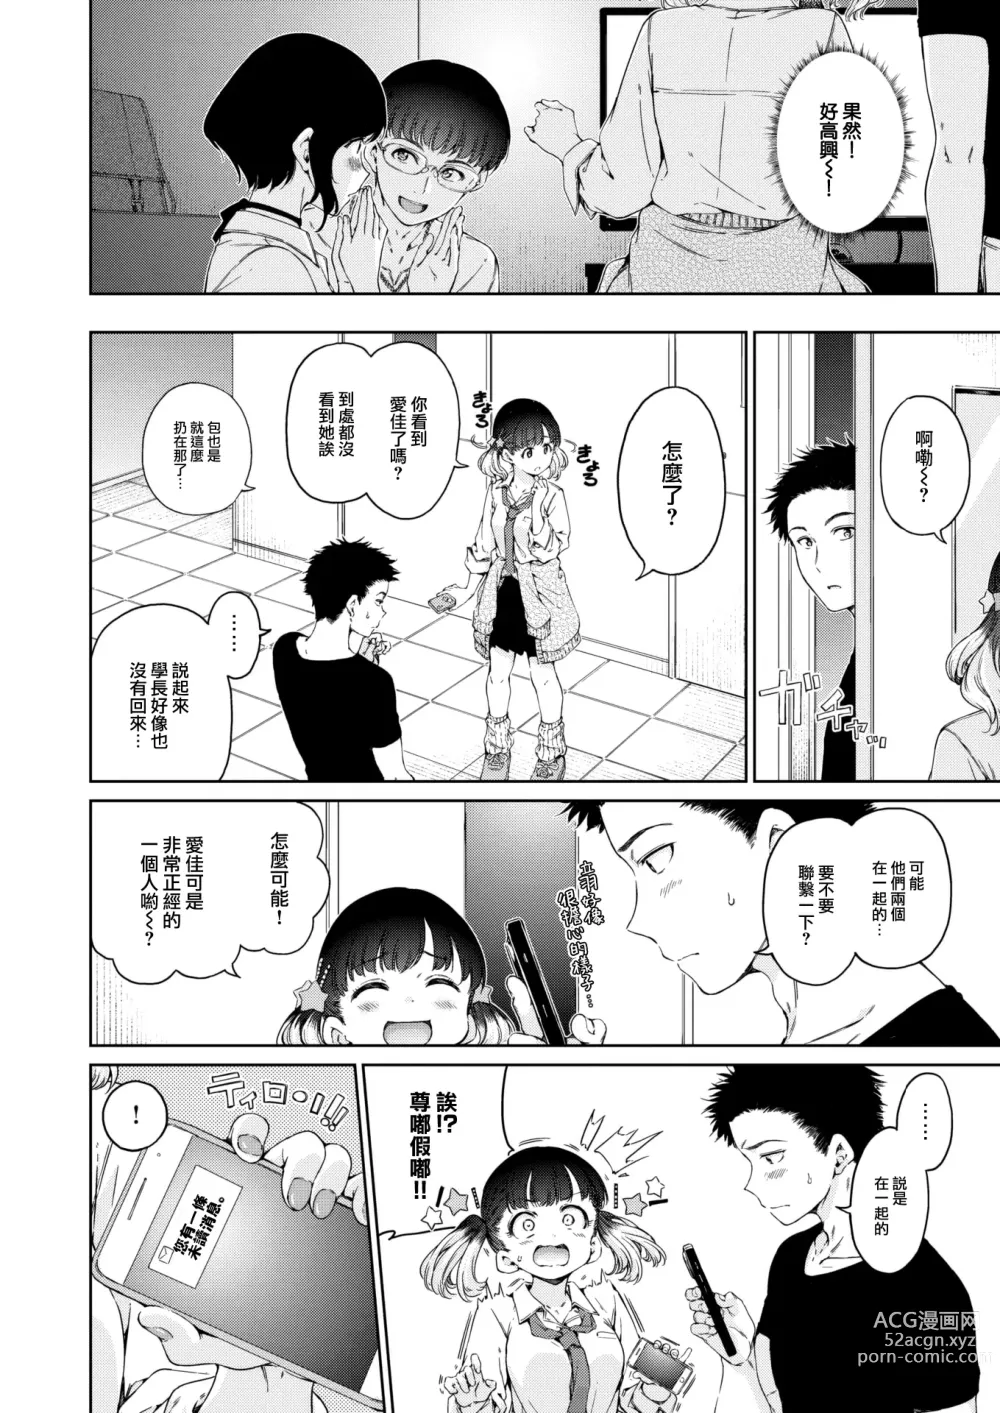 Page 9 of manga Natsu, Kibun Netsukkikyuu.